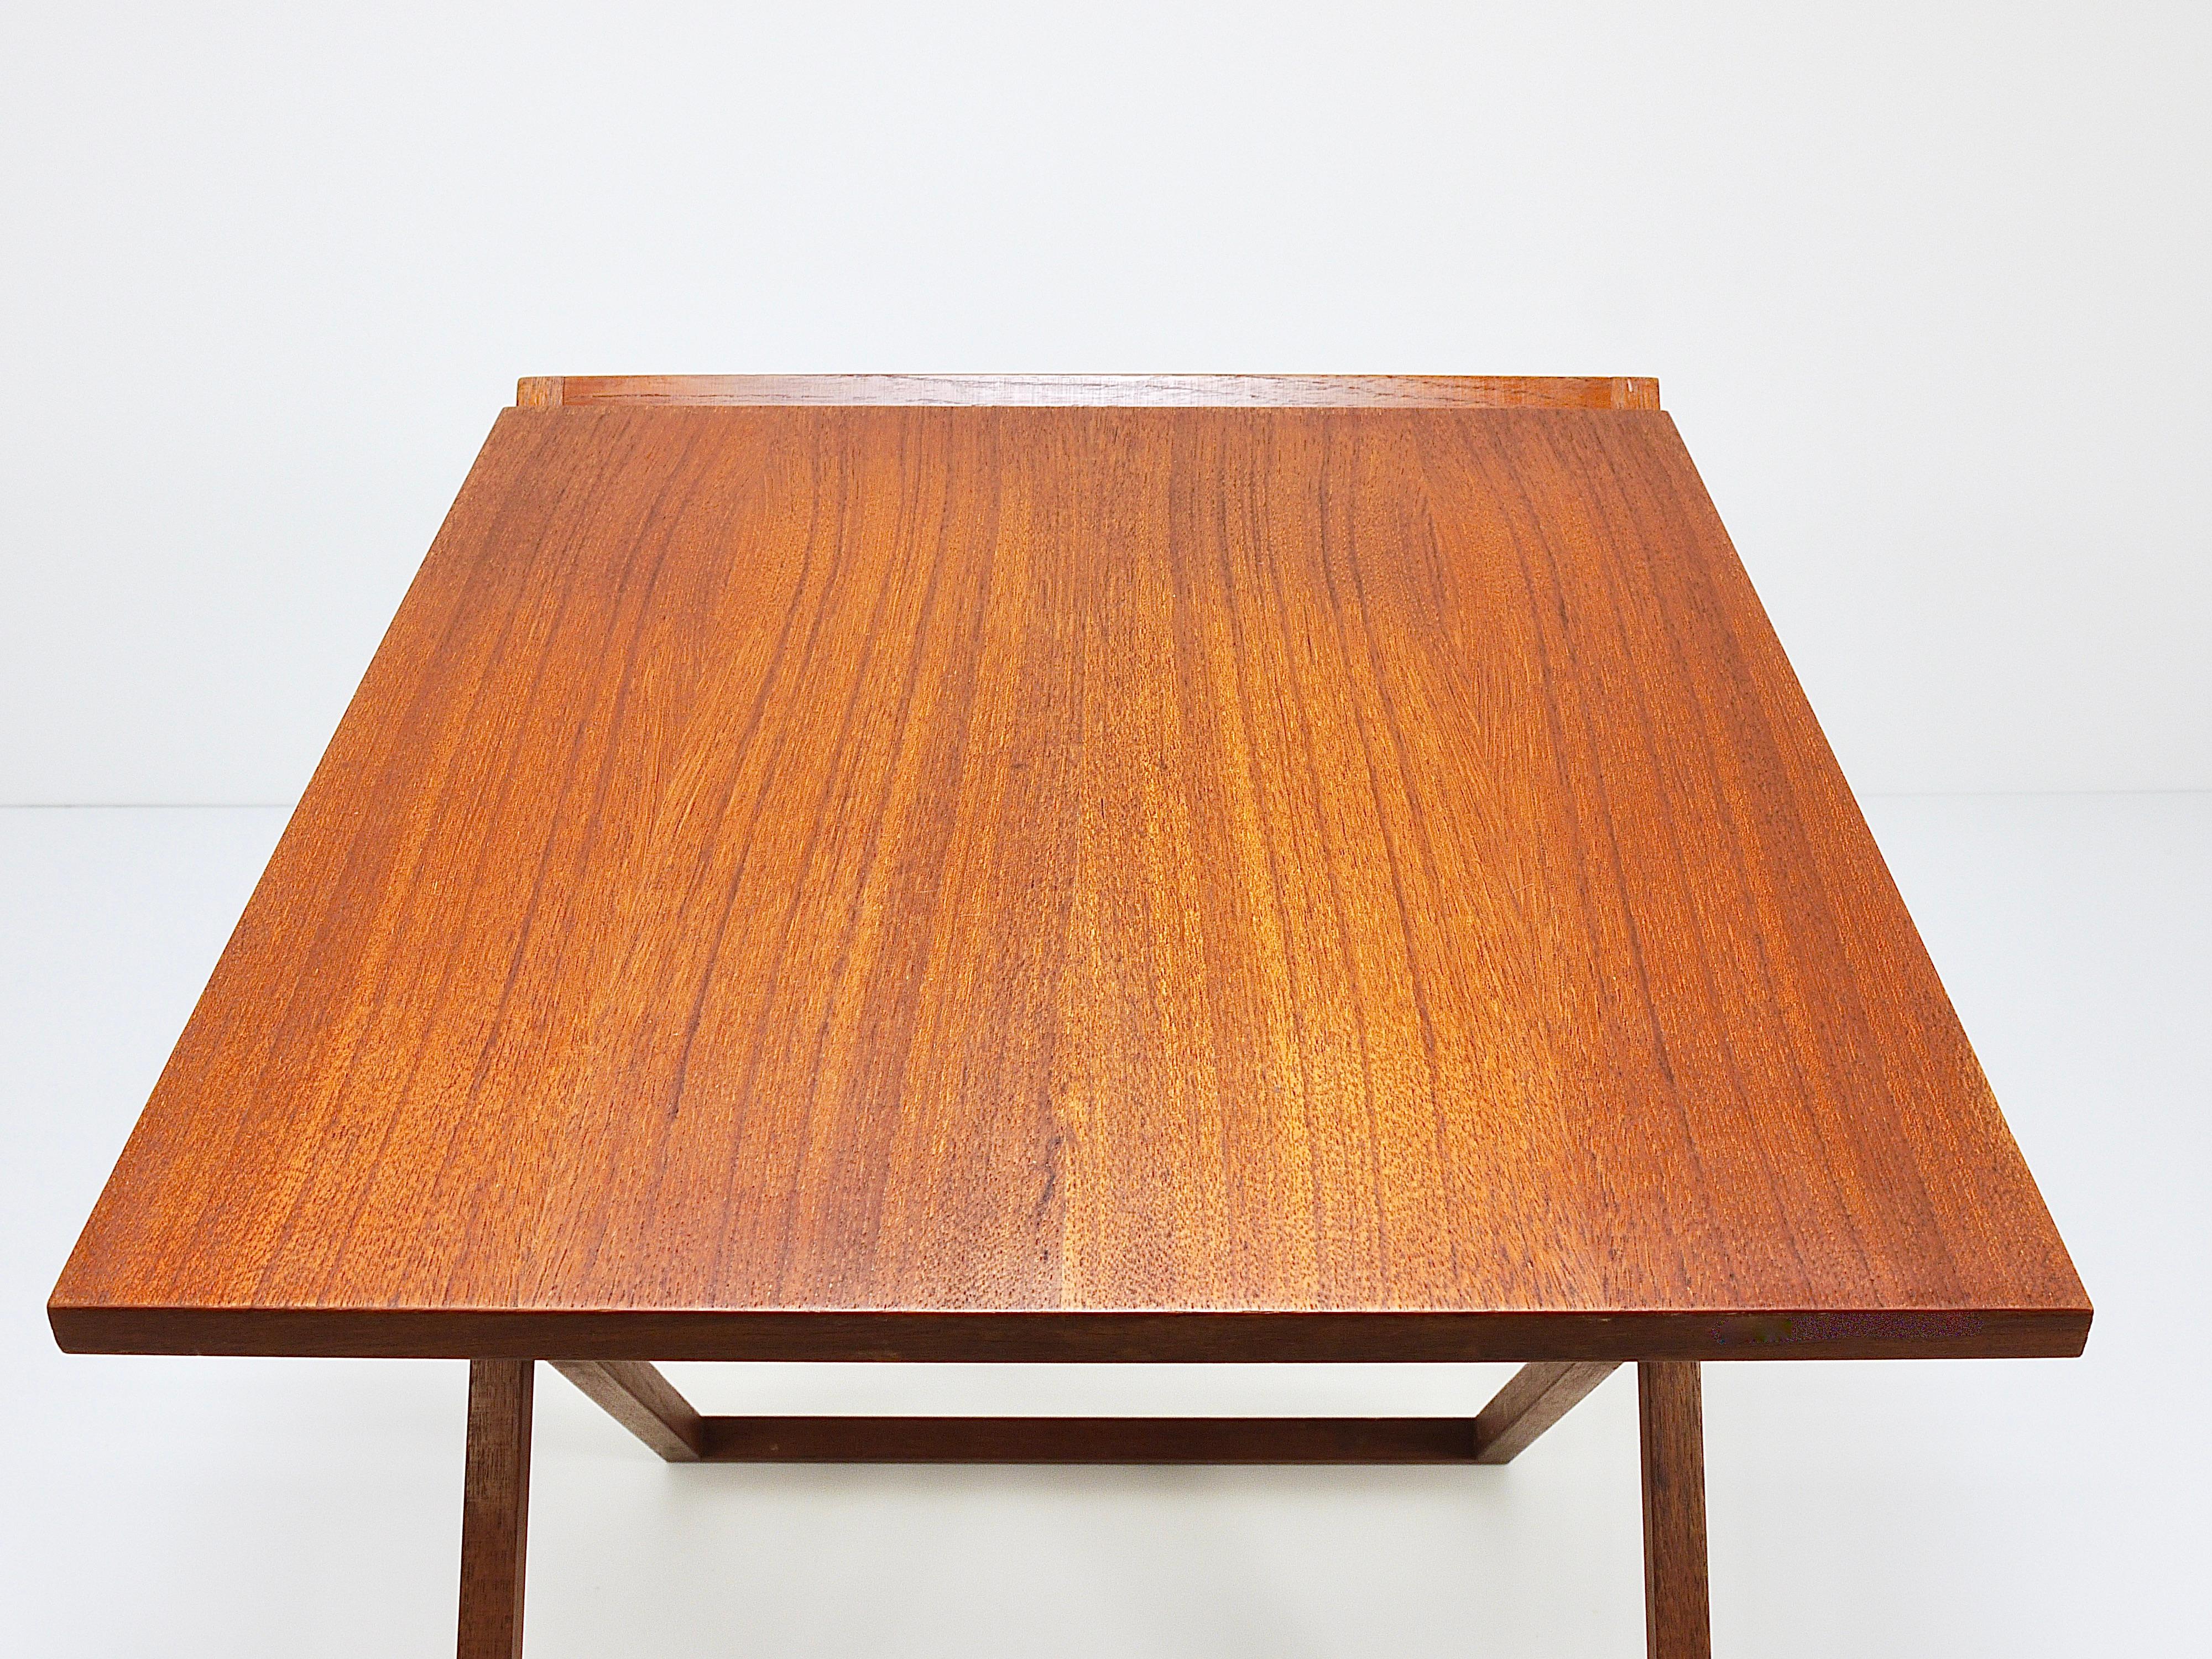 Three Illum Wikkelso Danish Modern Teak Folding Tables, Silkeborg Denmark, 1960s For Sale 4